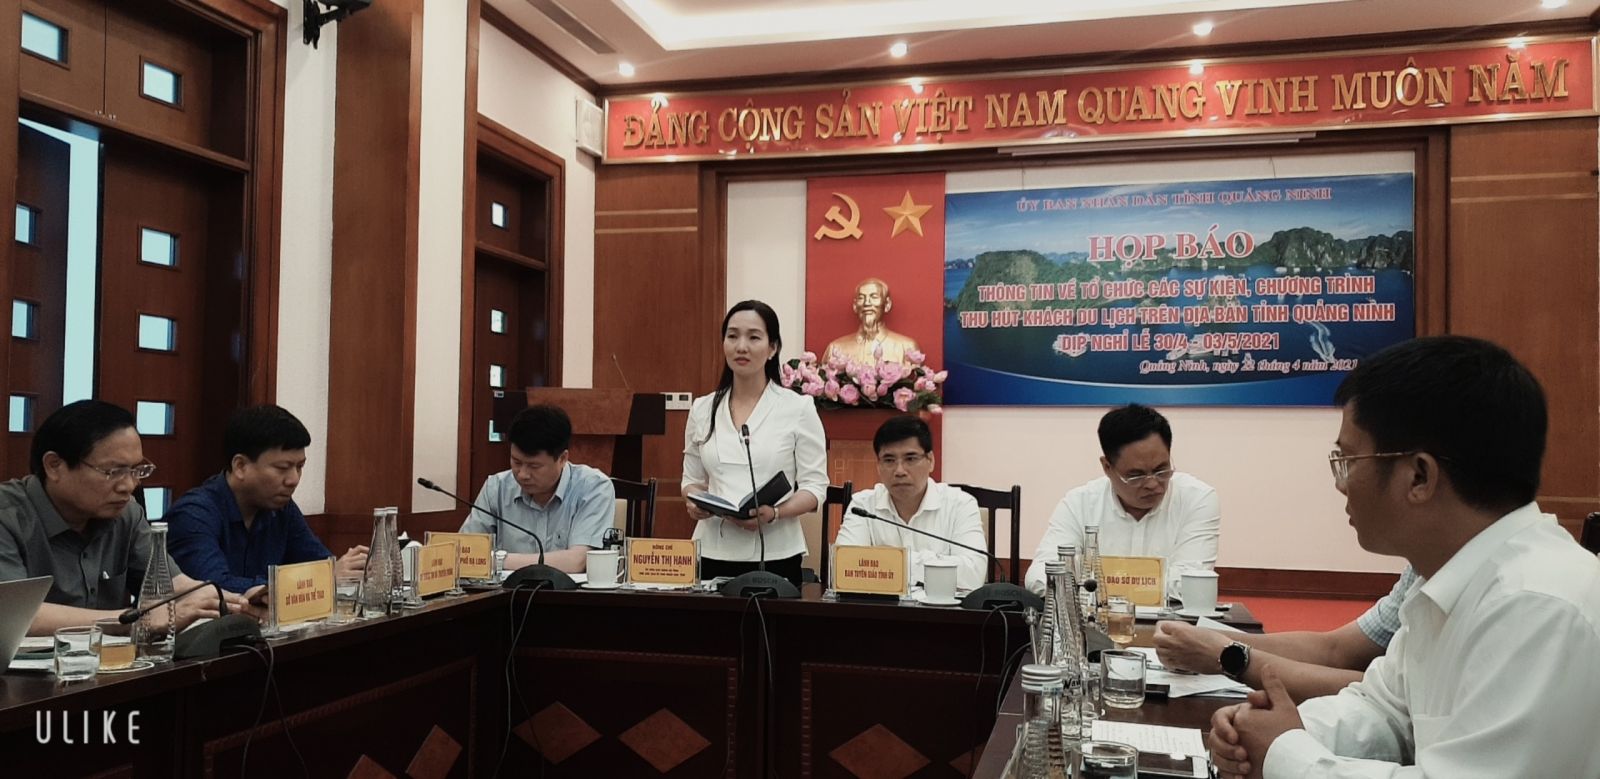 Tỉnh ủy viên, Phó chủ tịch UBND tỉnh Quảng Ninh Nguyễn Thị Hạnh phát biểu tại cuộc họp báo.